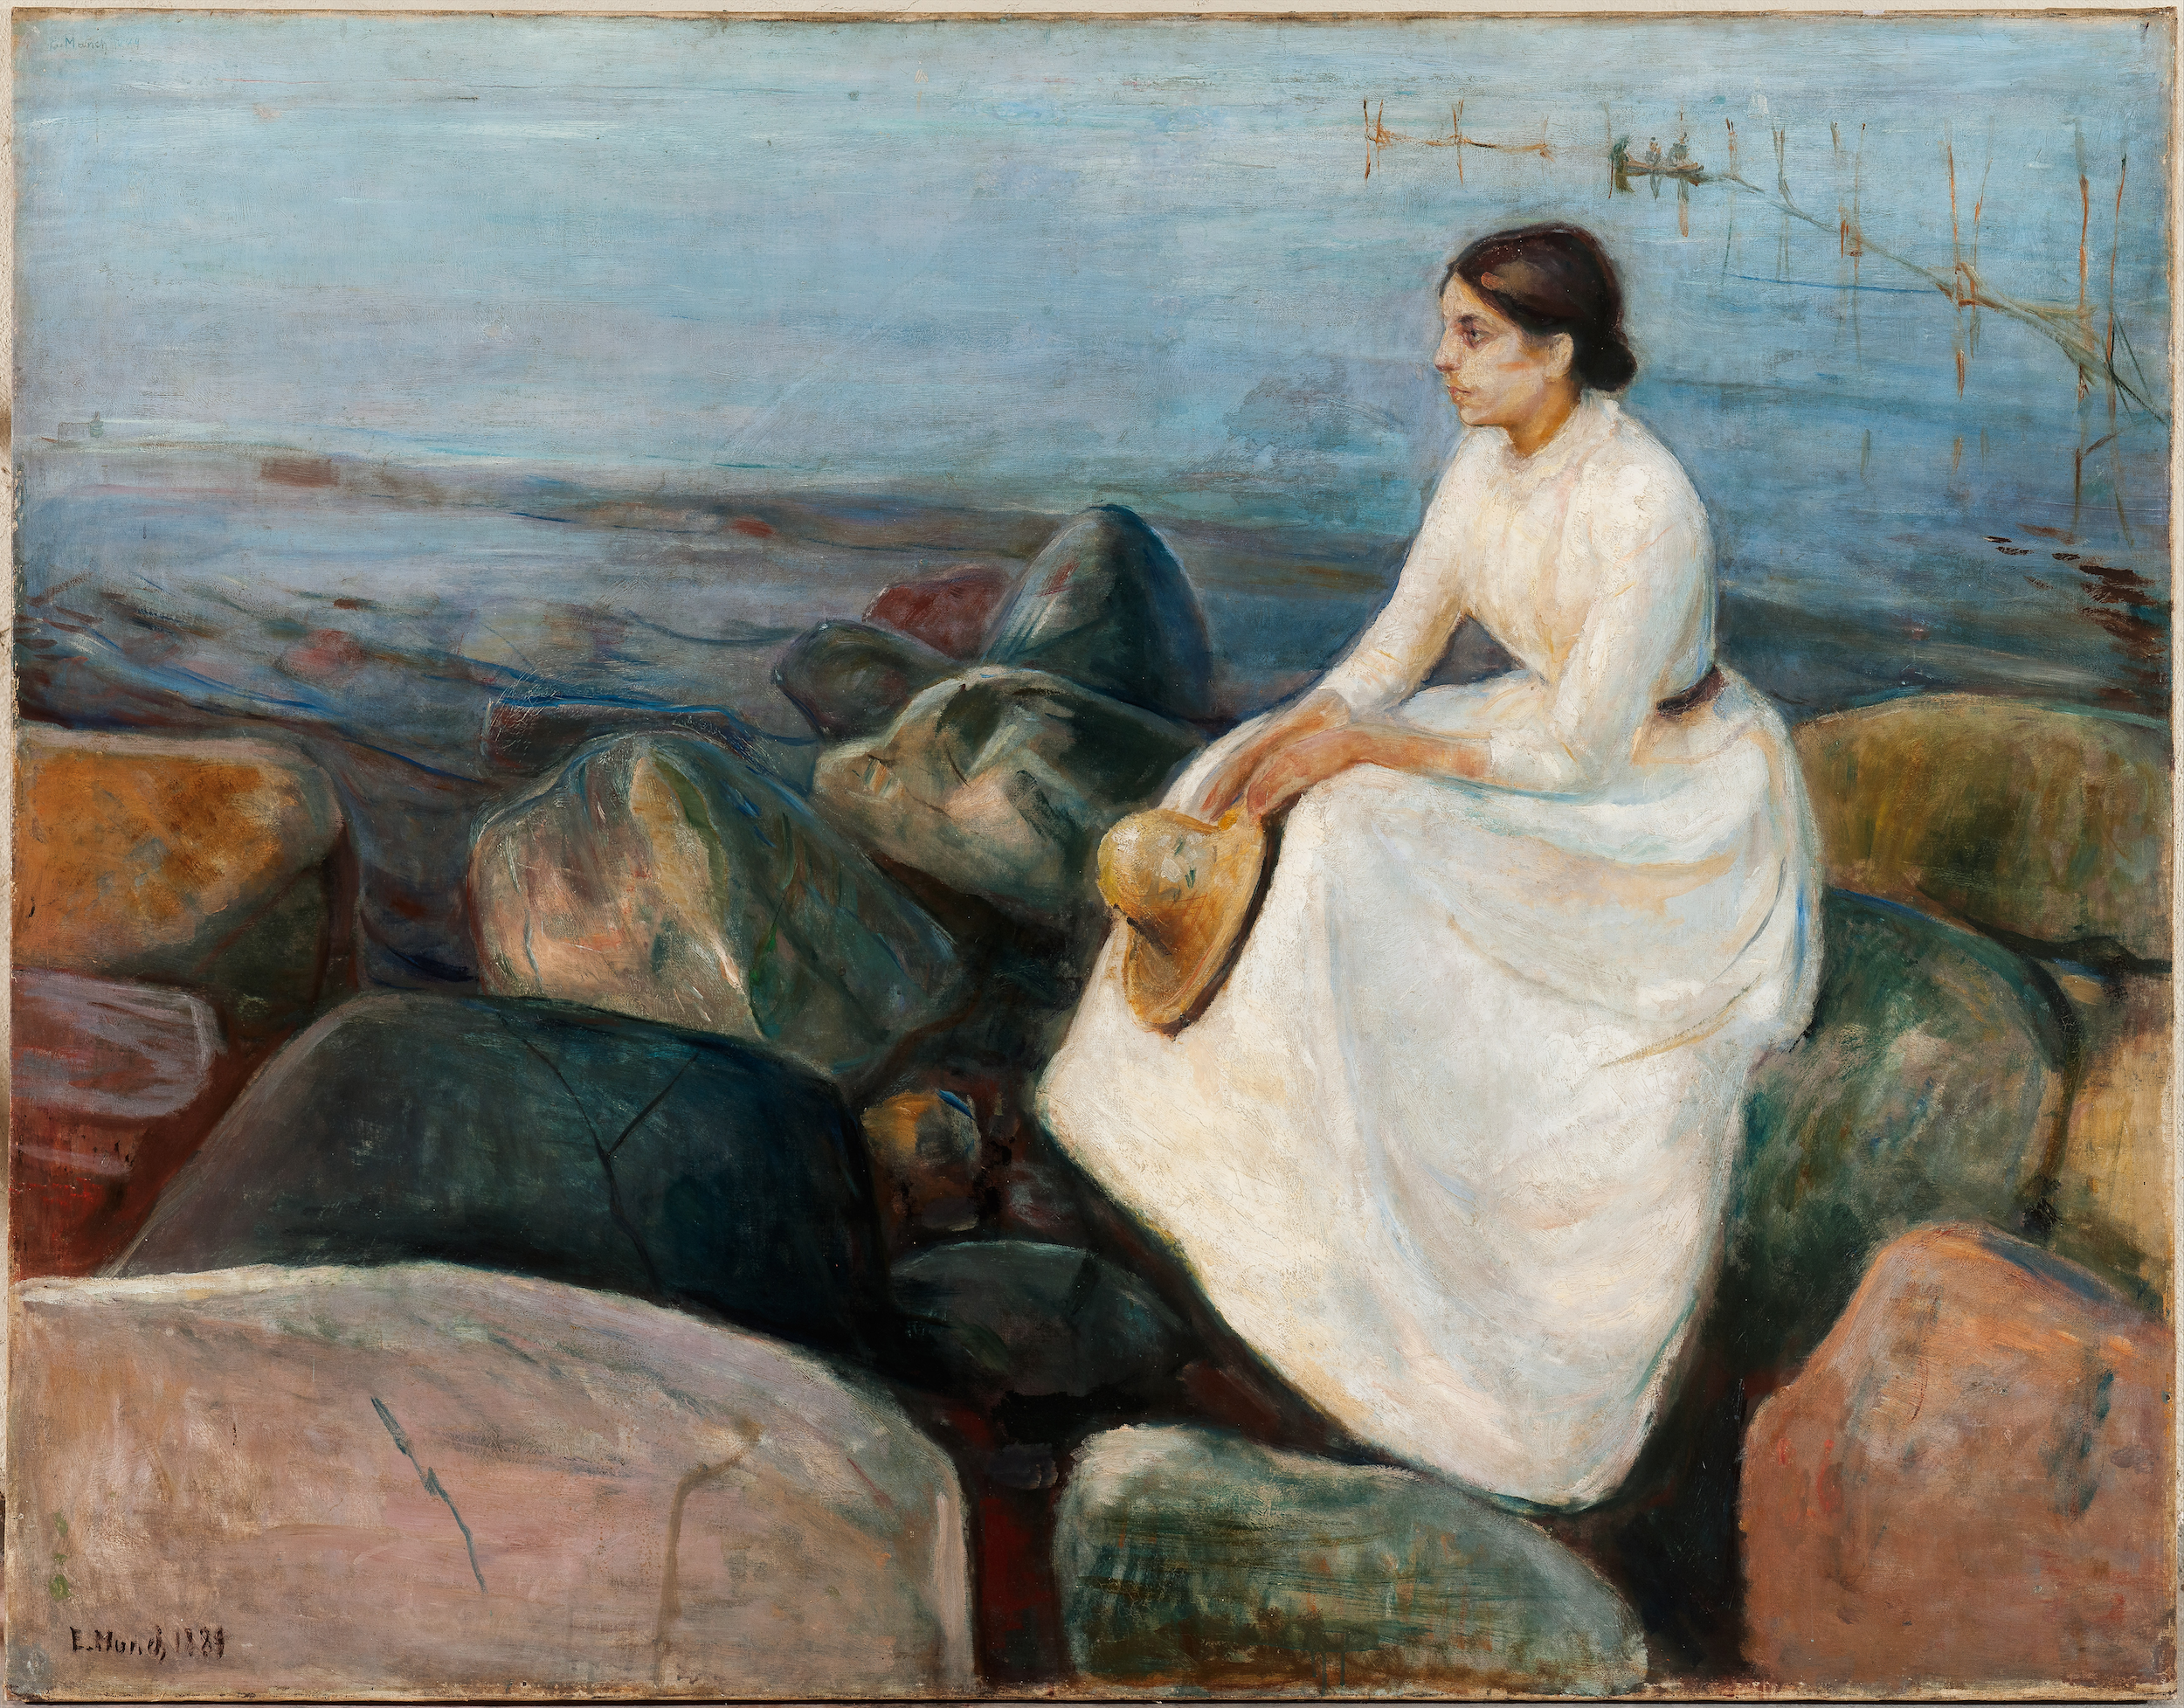 Yaz Gecesi,  Inger Sahilde by Edvard Munch - 1889 - 126.5 x 161.5 cm Europeana